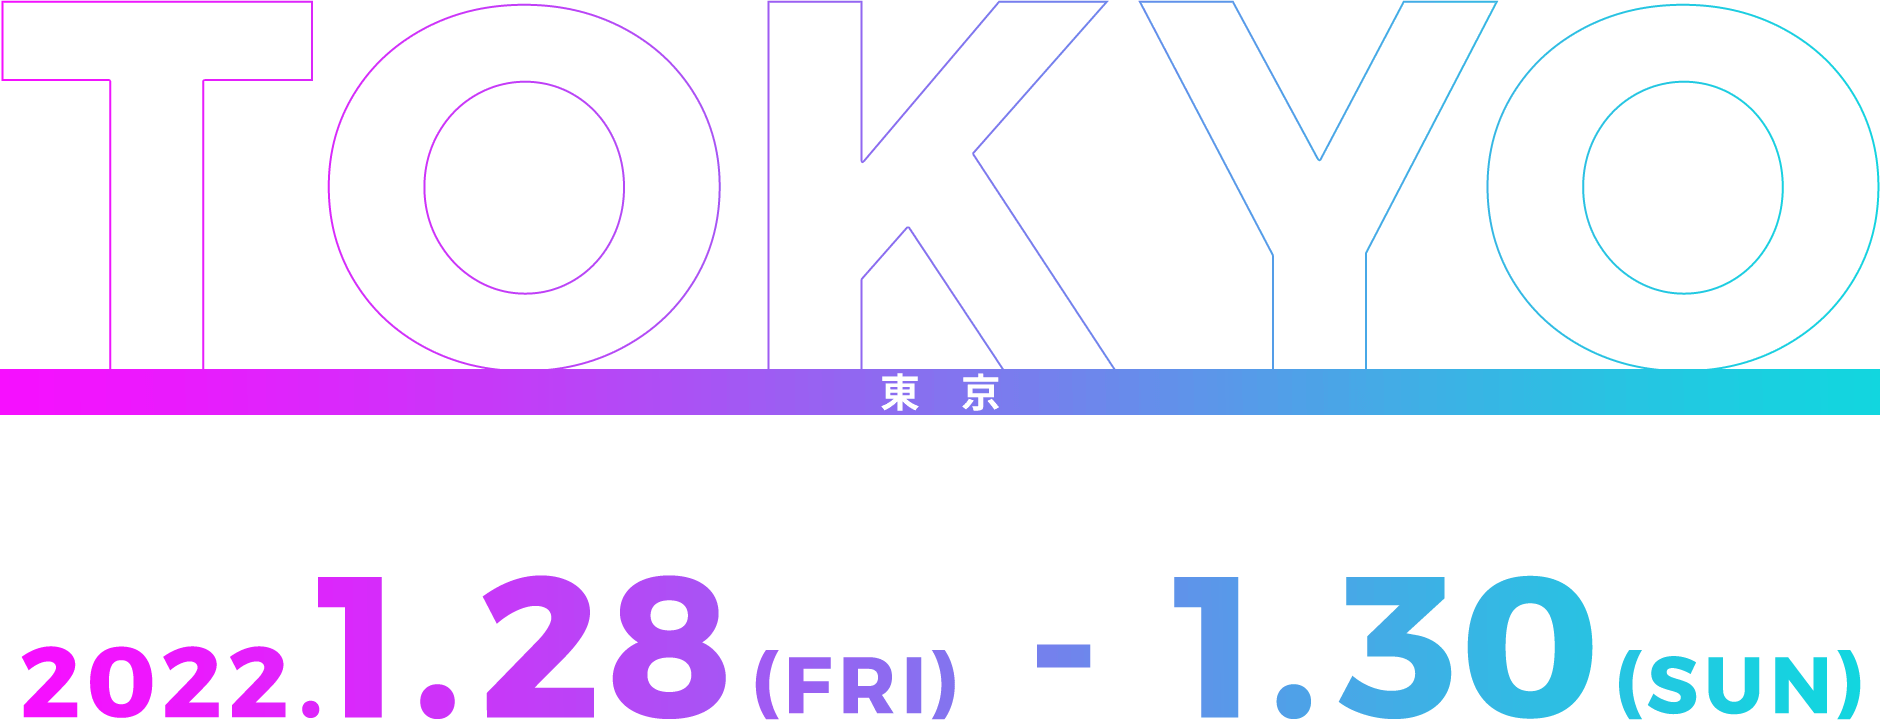 東京 2022.1.28(FRI) - 2022.1.23(SUN)